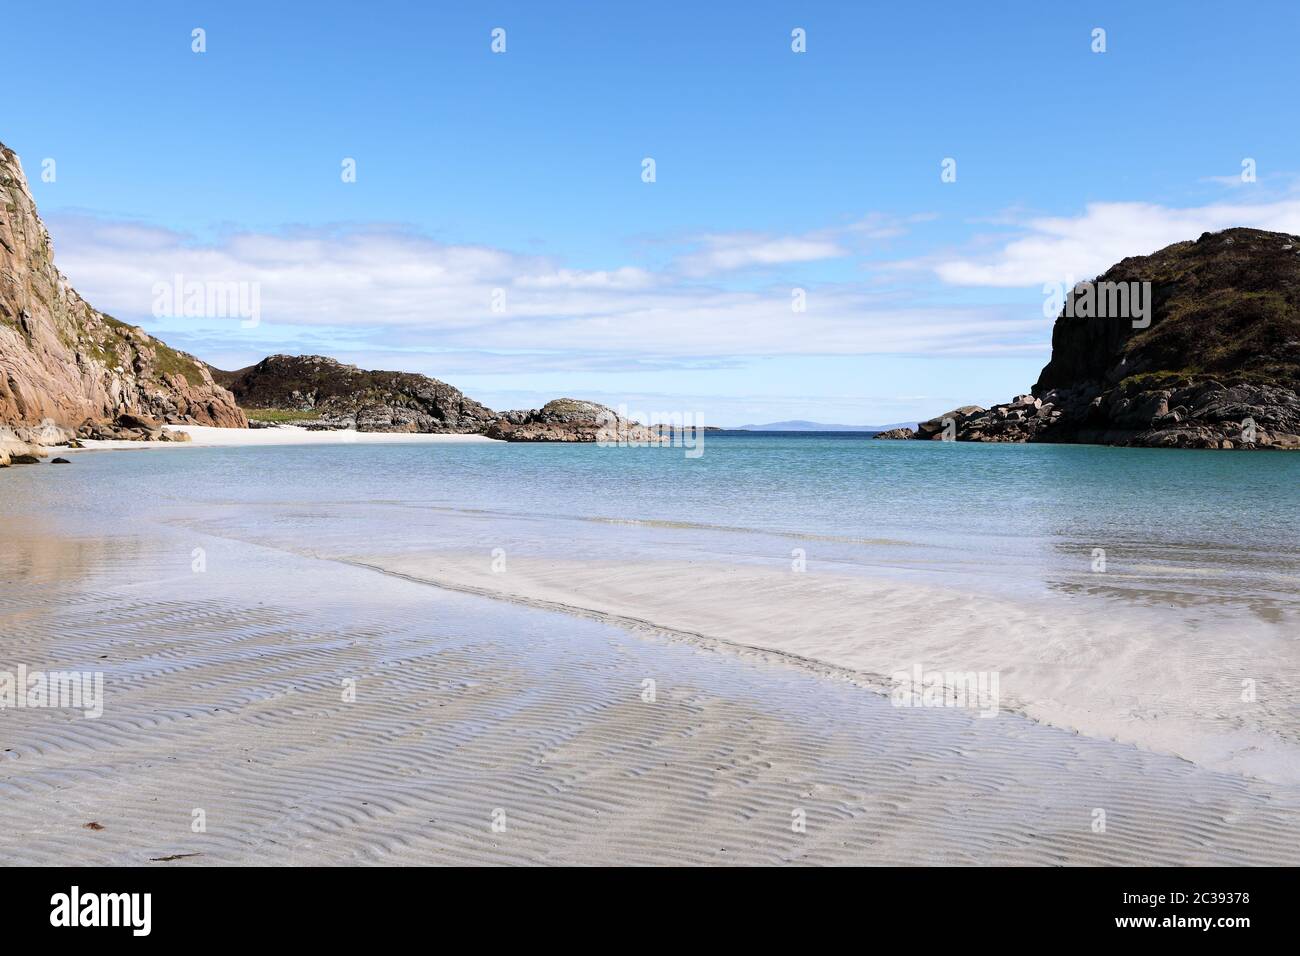 Traigh Gheal, una fabulosa playa de arena blanca en la Isla de Mull, Hébridas interiores de Escocia Foto de stock